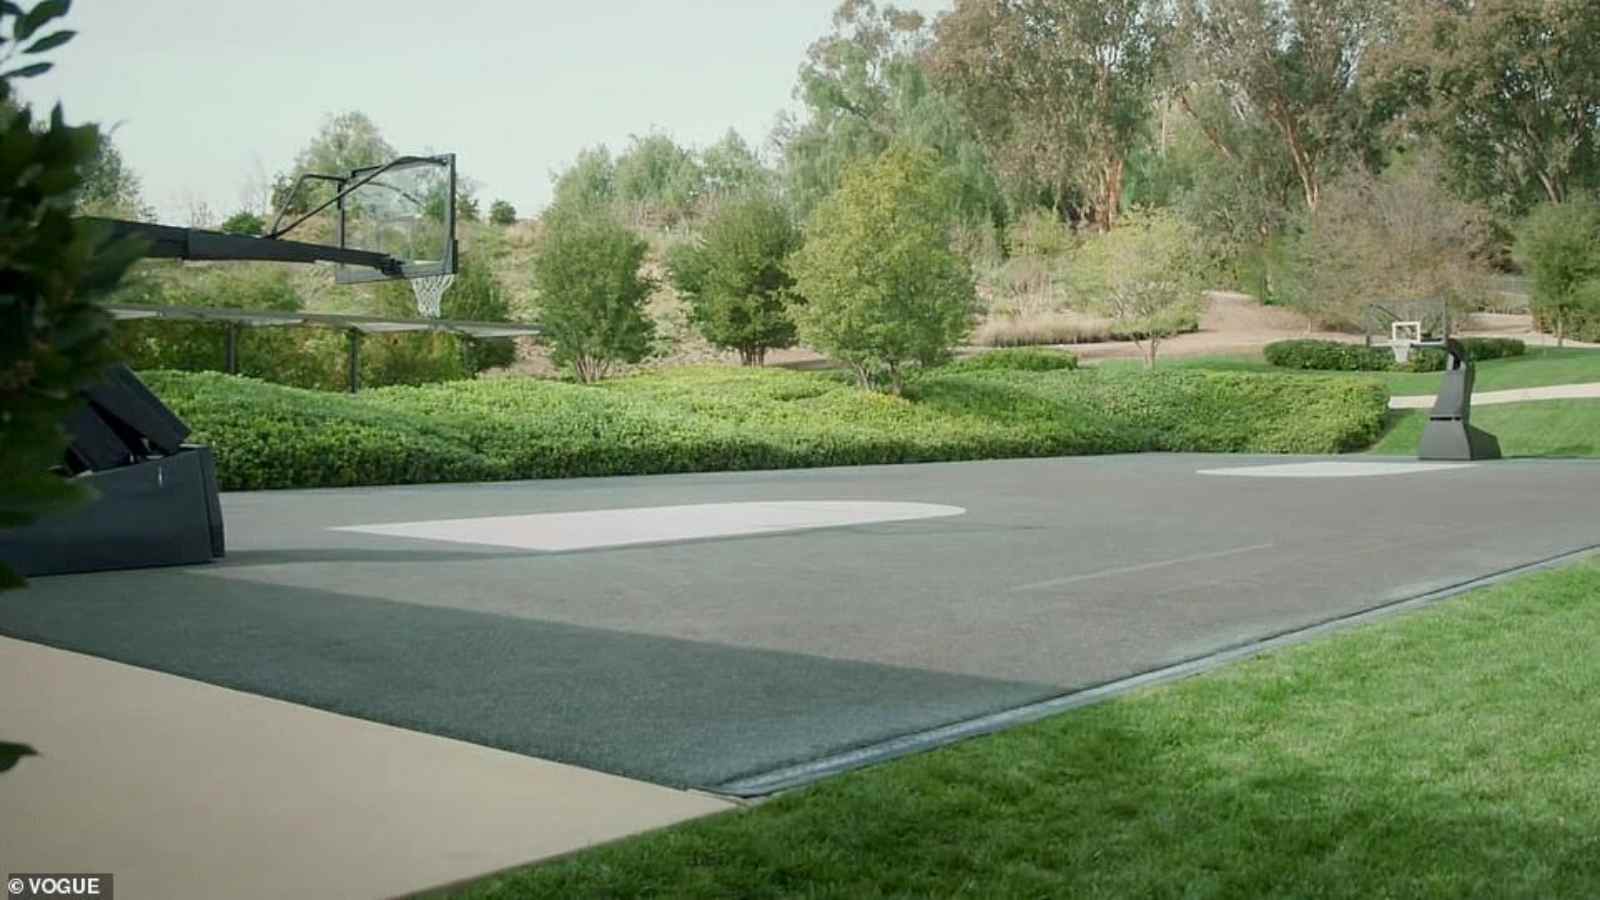 The Basketball Court in Kim's backyard